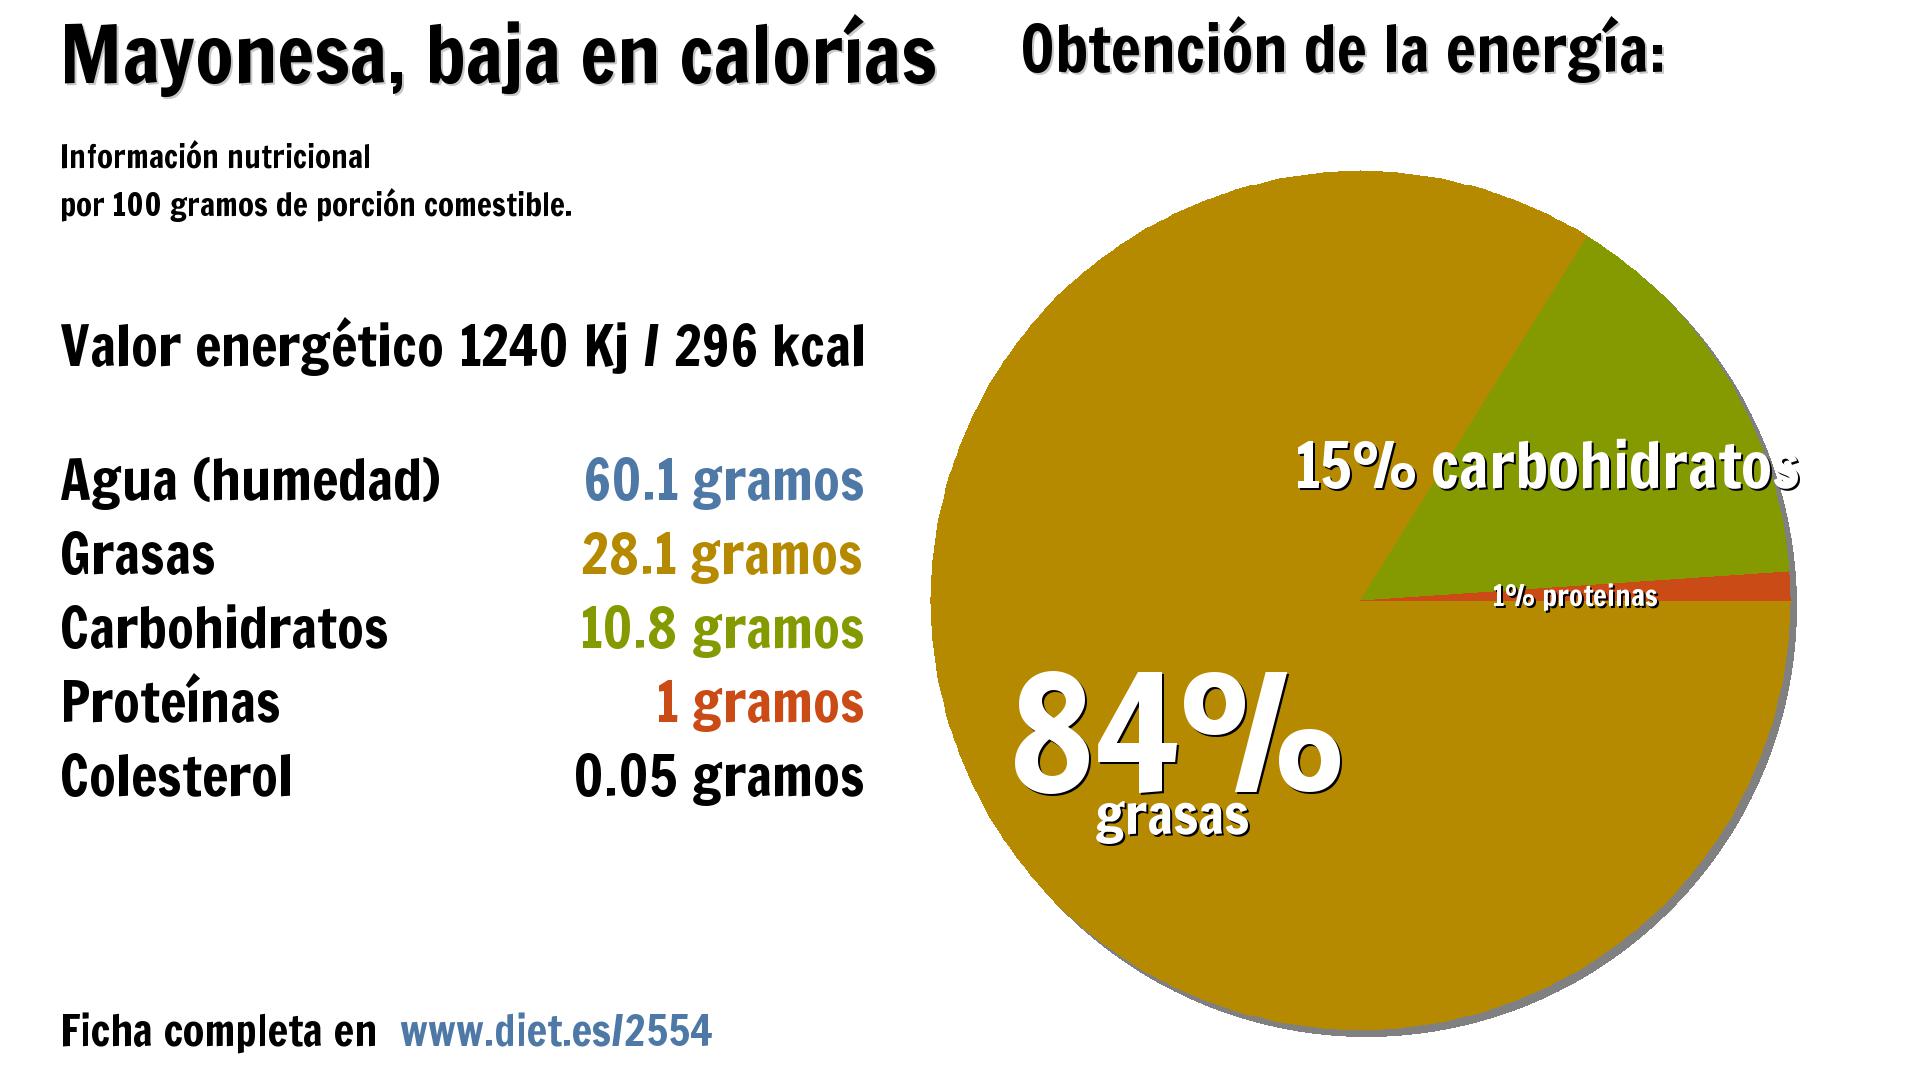 Mayonesa, baja en calorías: energía 1240 Kj, agua 60 g., grasas 28 g., carbohidratos 11 g. y proteínas 1 g.